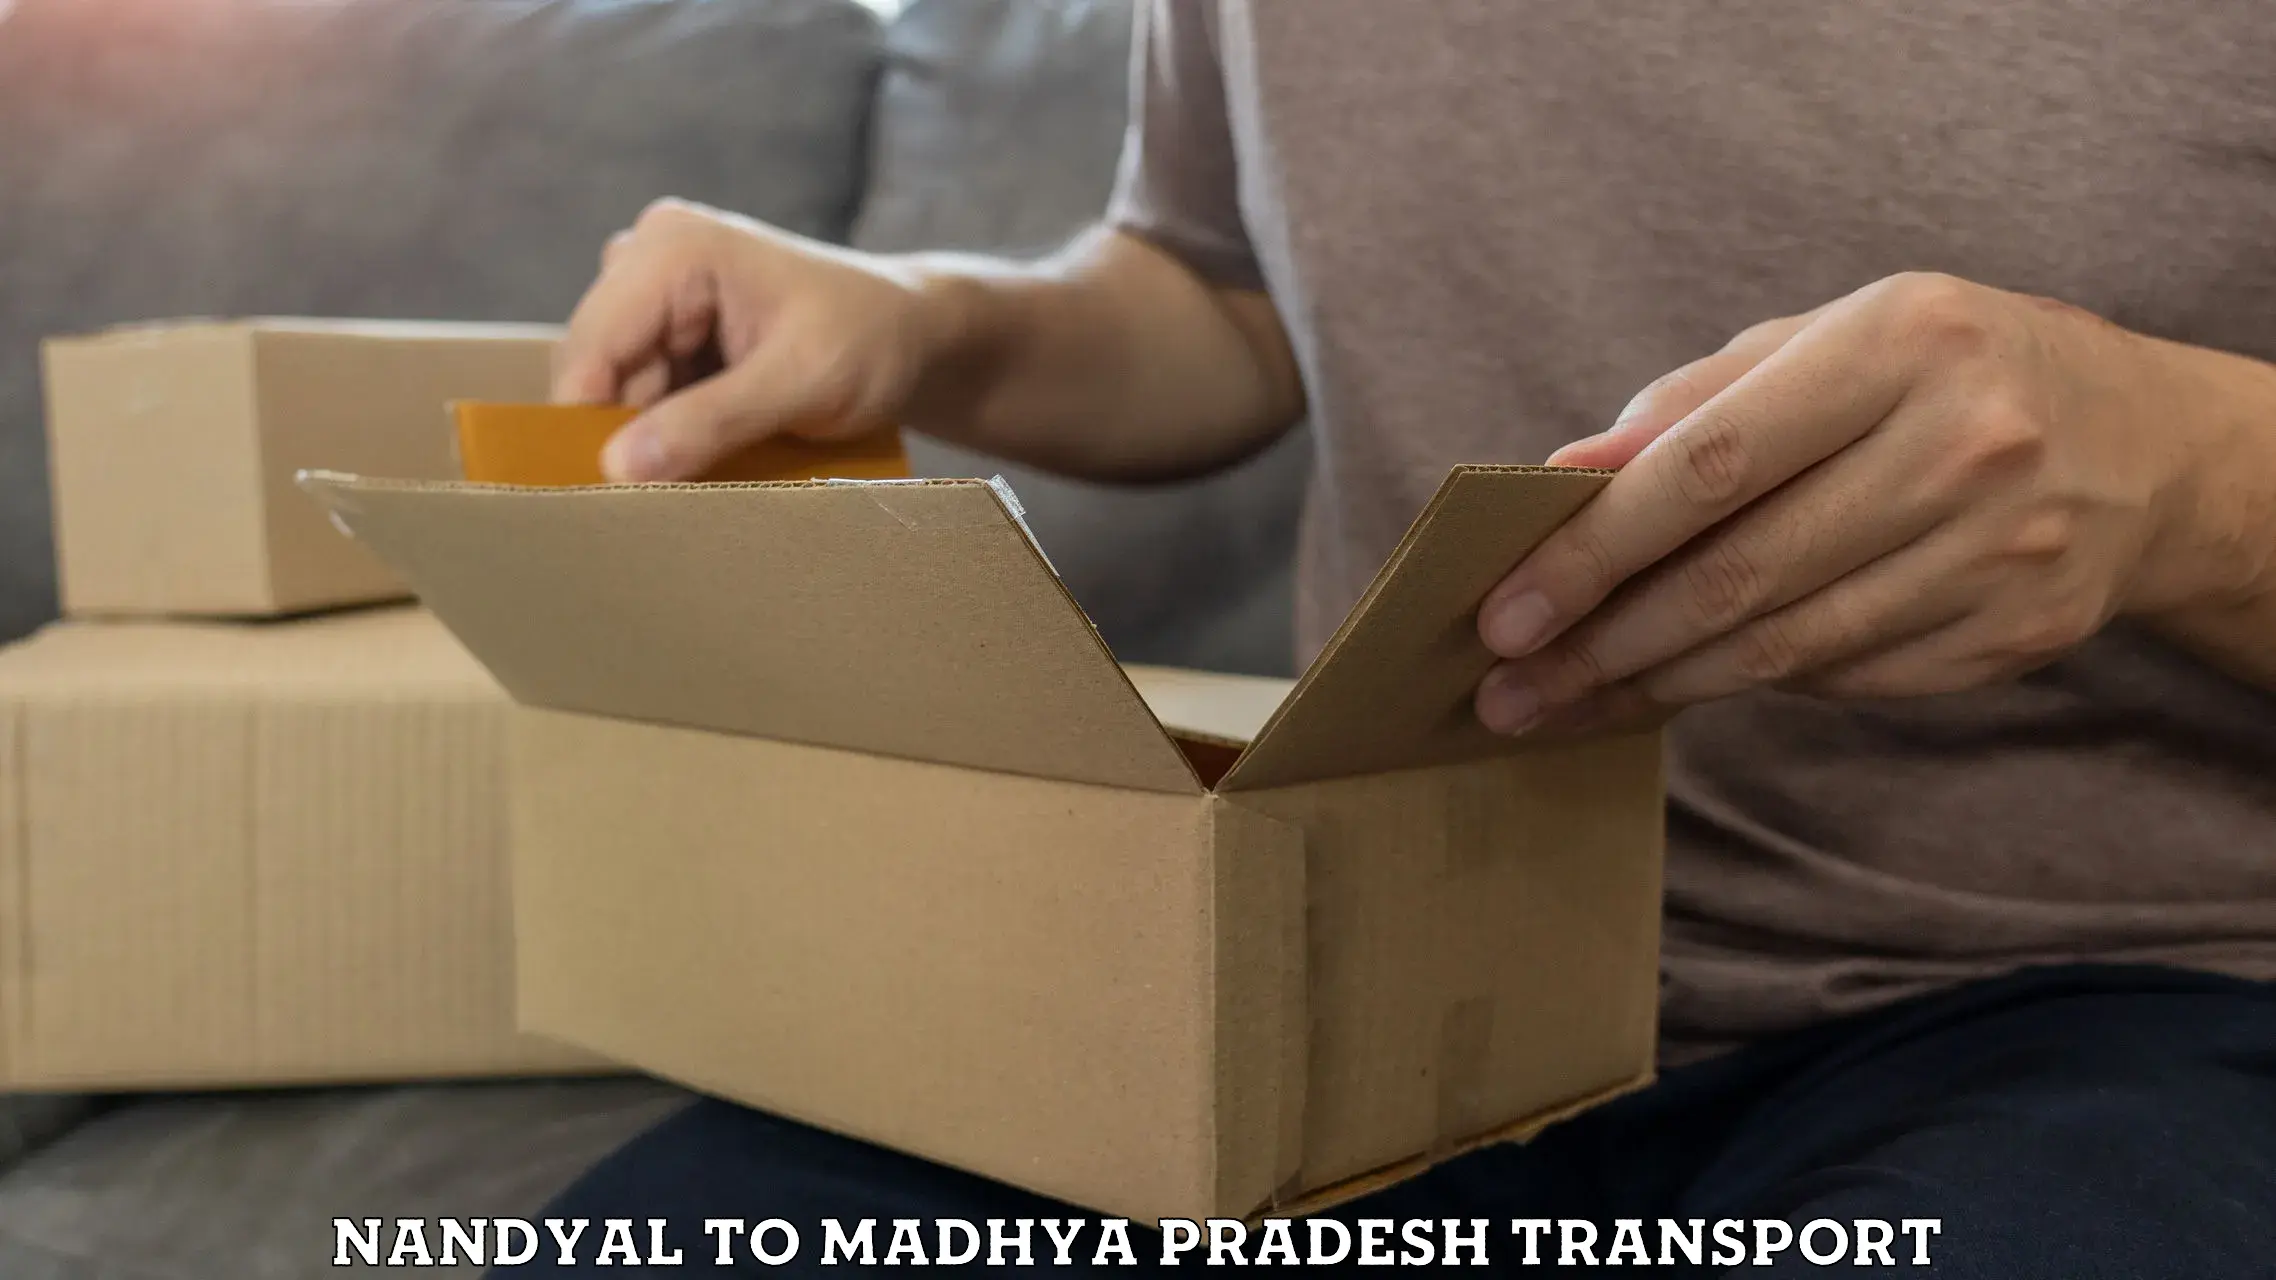 Shipping partner Nandyal to Madwas